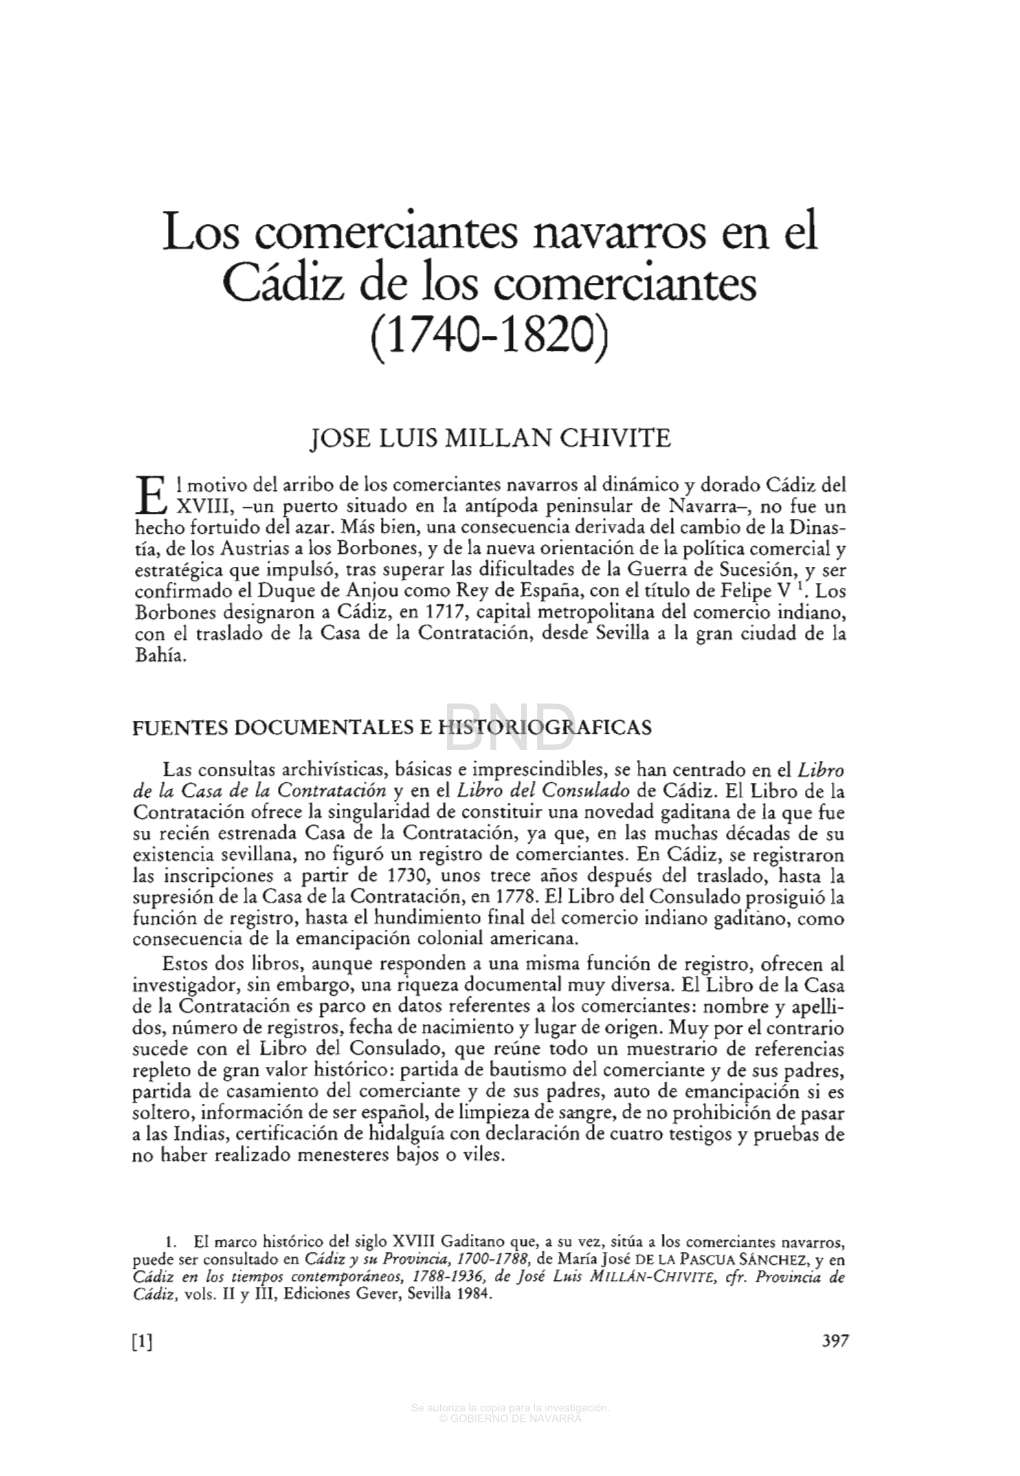 Los Comerciantes Navarros En El Cádiz De Los Comerciantes (1740-1820)